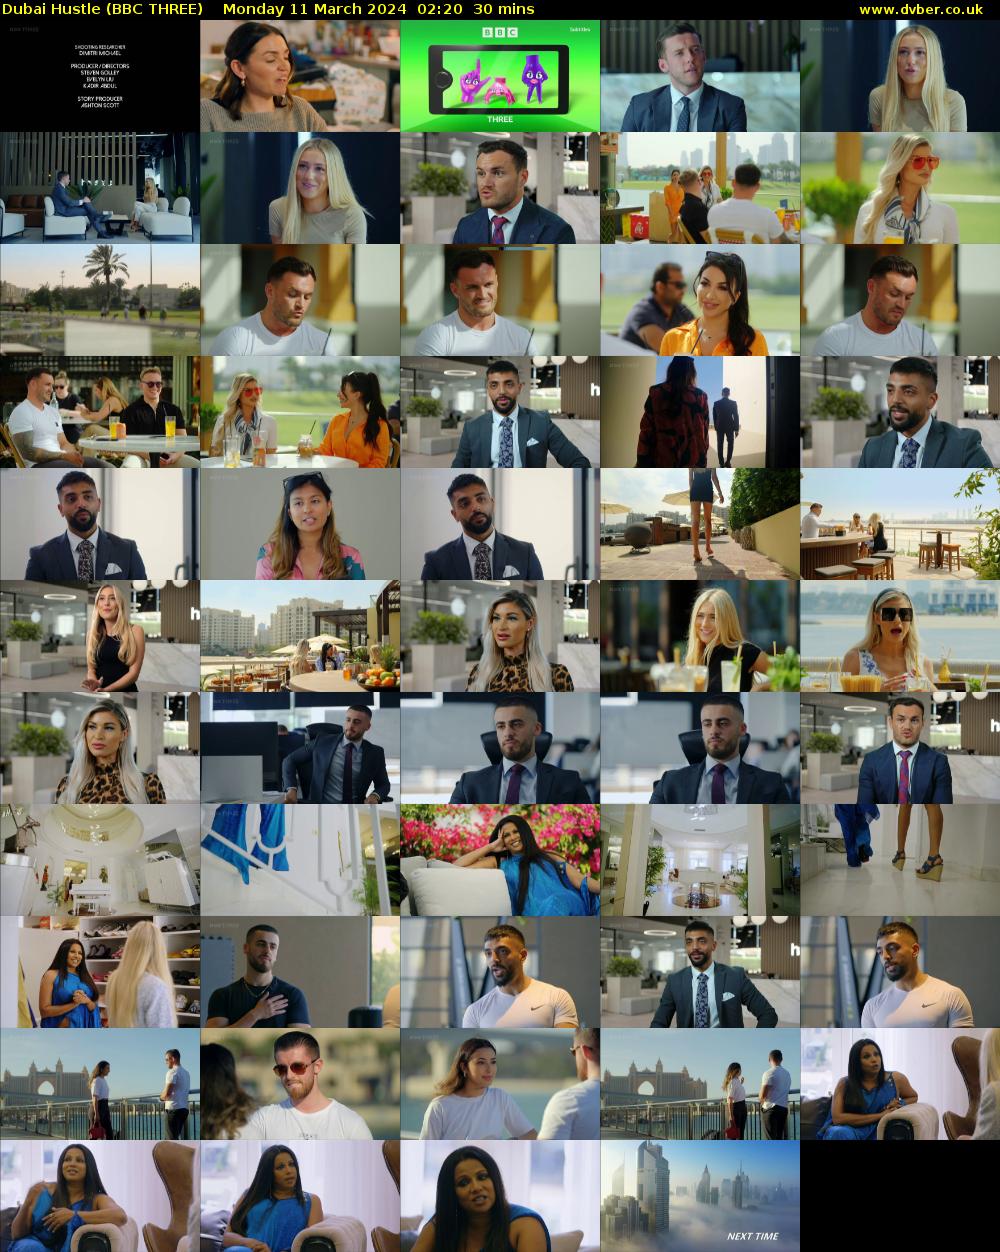 Dubai Hustle (BBC THREE) Monday 11 March 2024 02:20 - 02:50